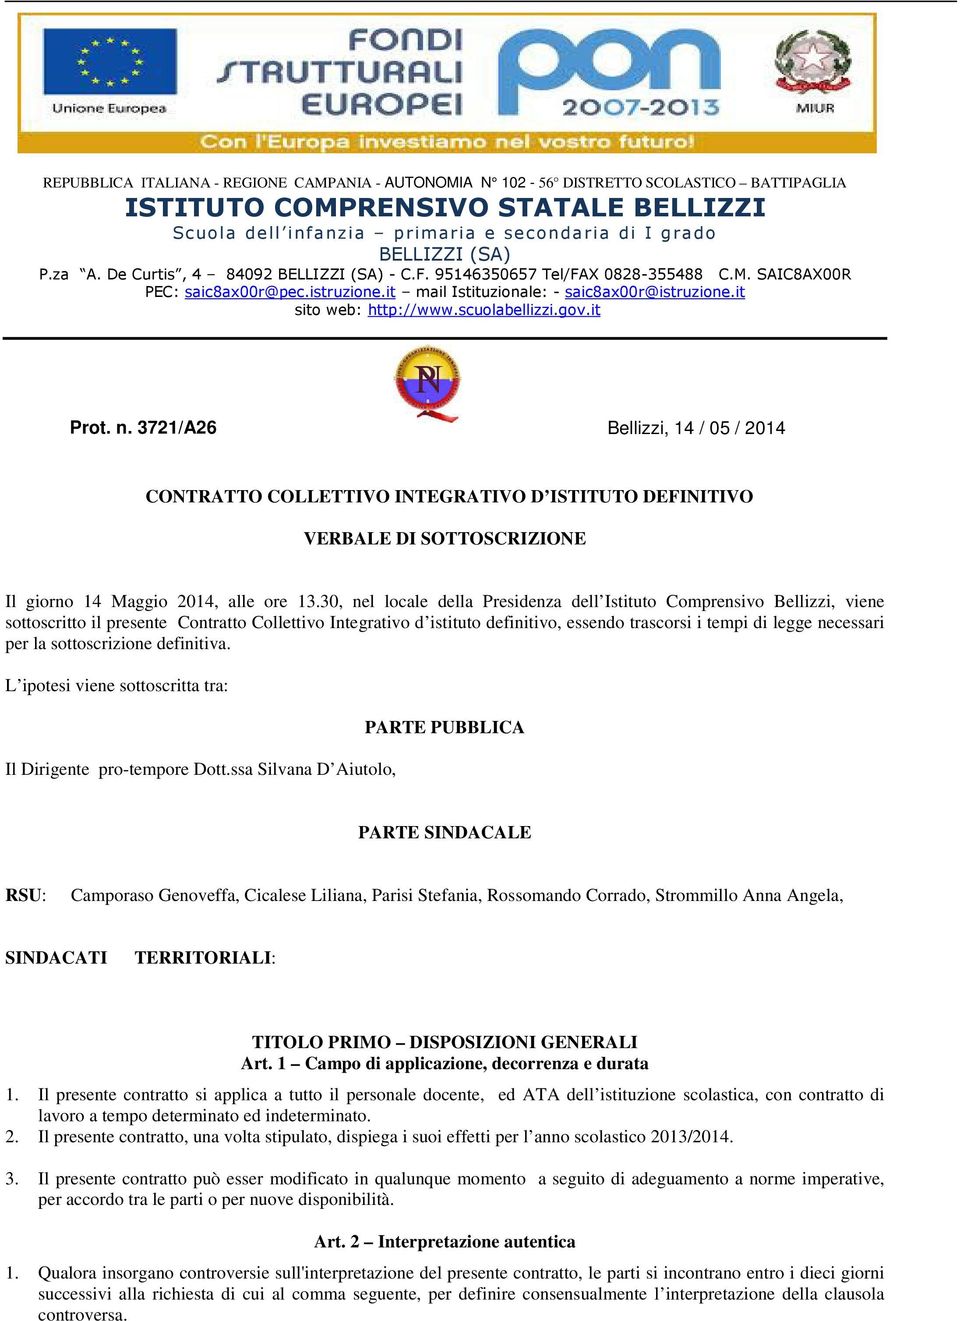 scuolabellizzi.gov.it Prot. n. 3721/A26 Bellizzi, 14 / 05 / 2014 CONTRATTO COLLETTIVO INTEGRATIVO D ISTITUTO DEFINITIVO VERBALE DI SOTTOSCRIZIONE Il giorno 14 Maggio 2014, alle ore 13.